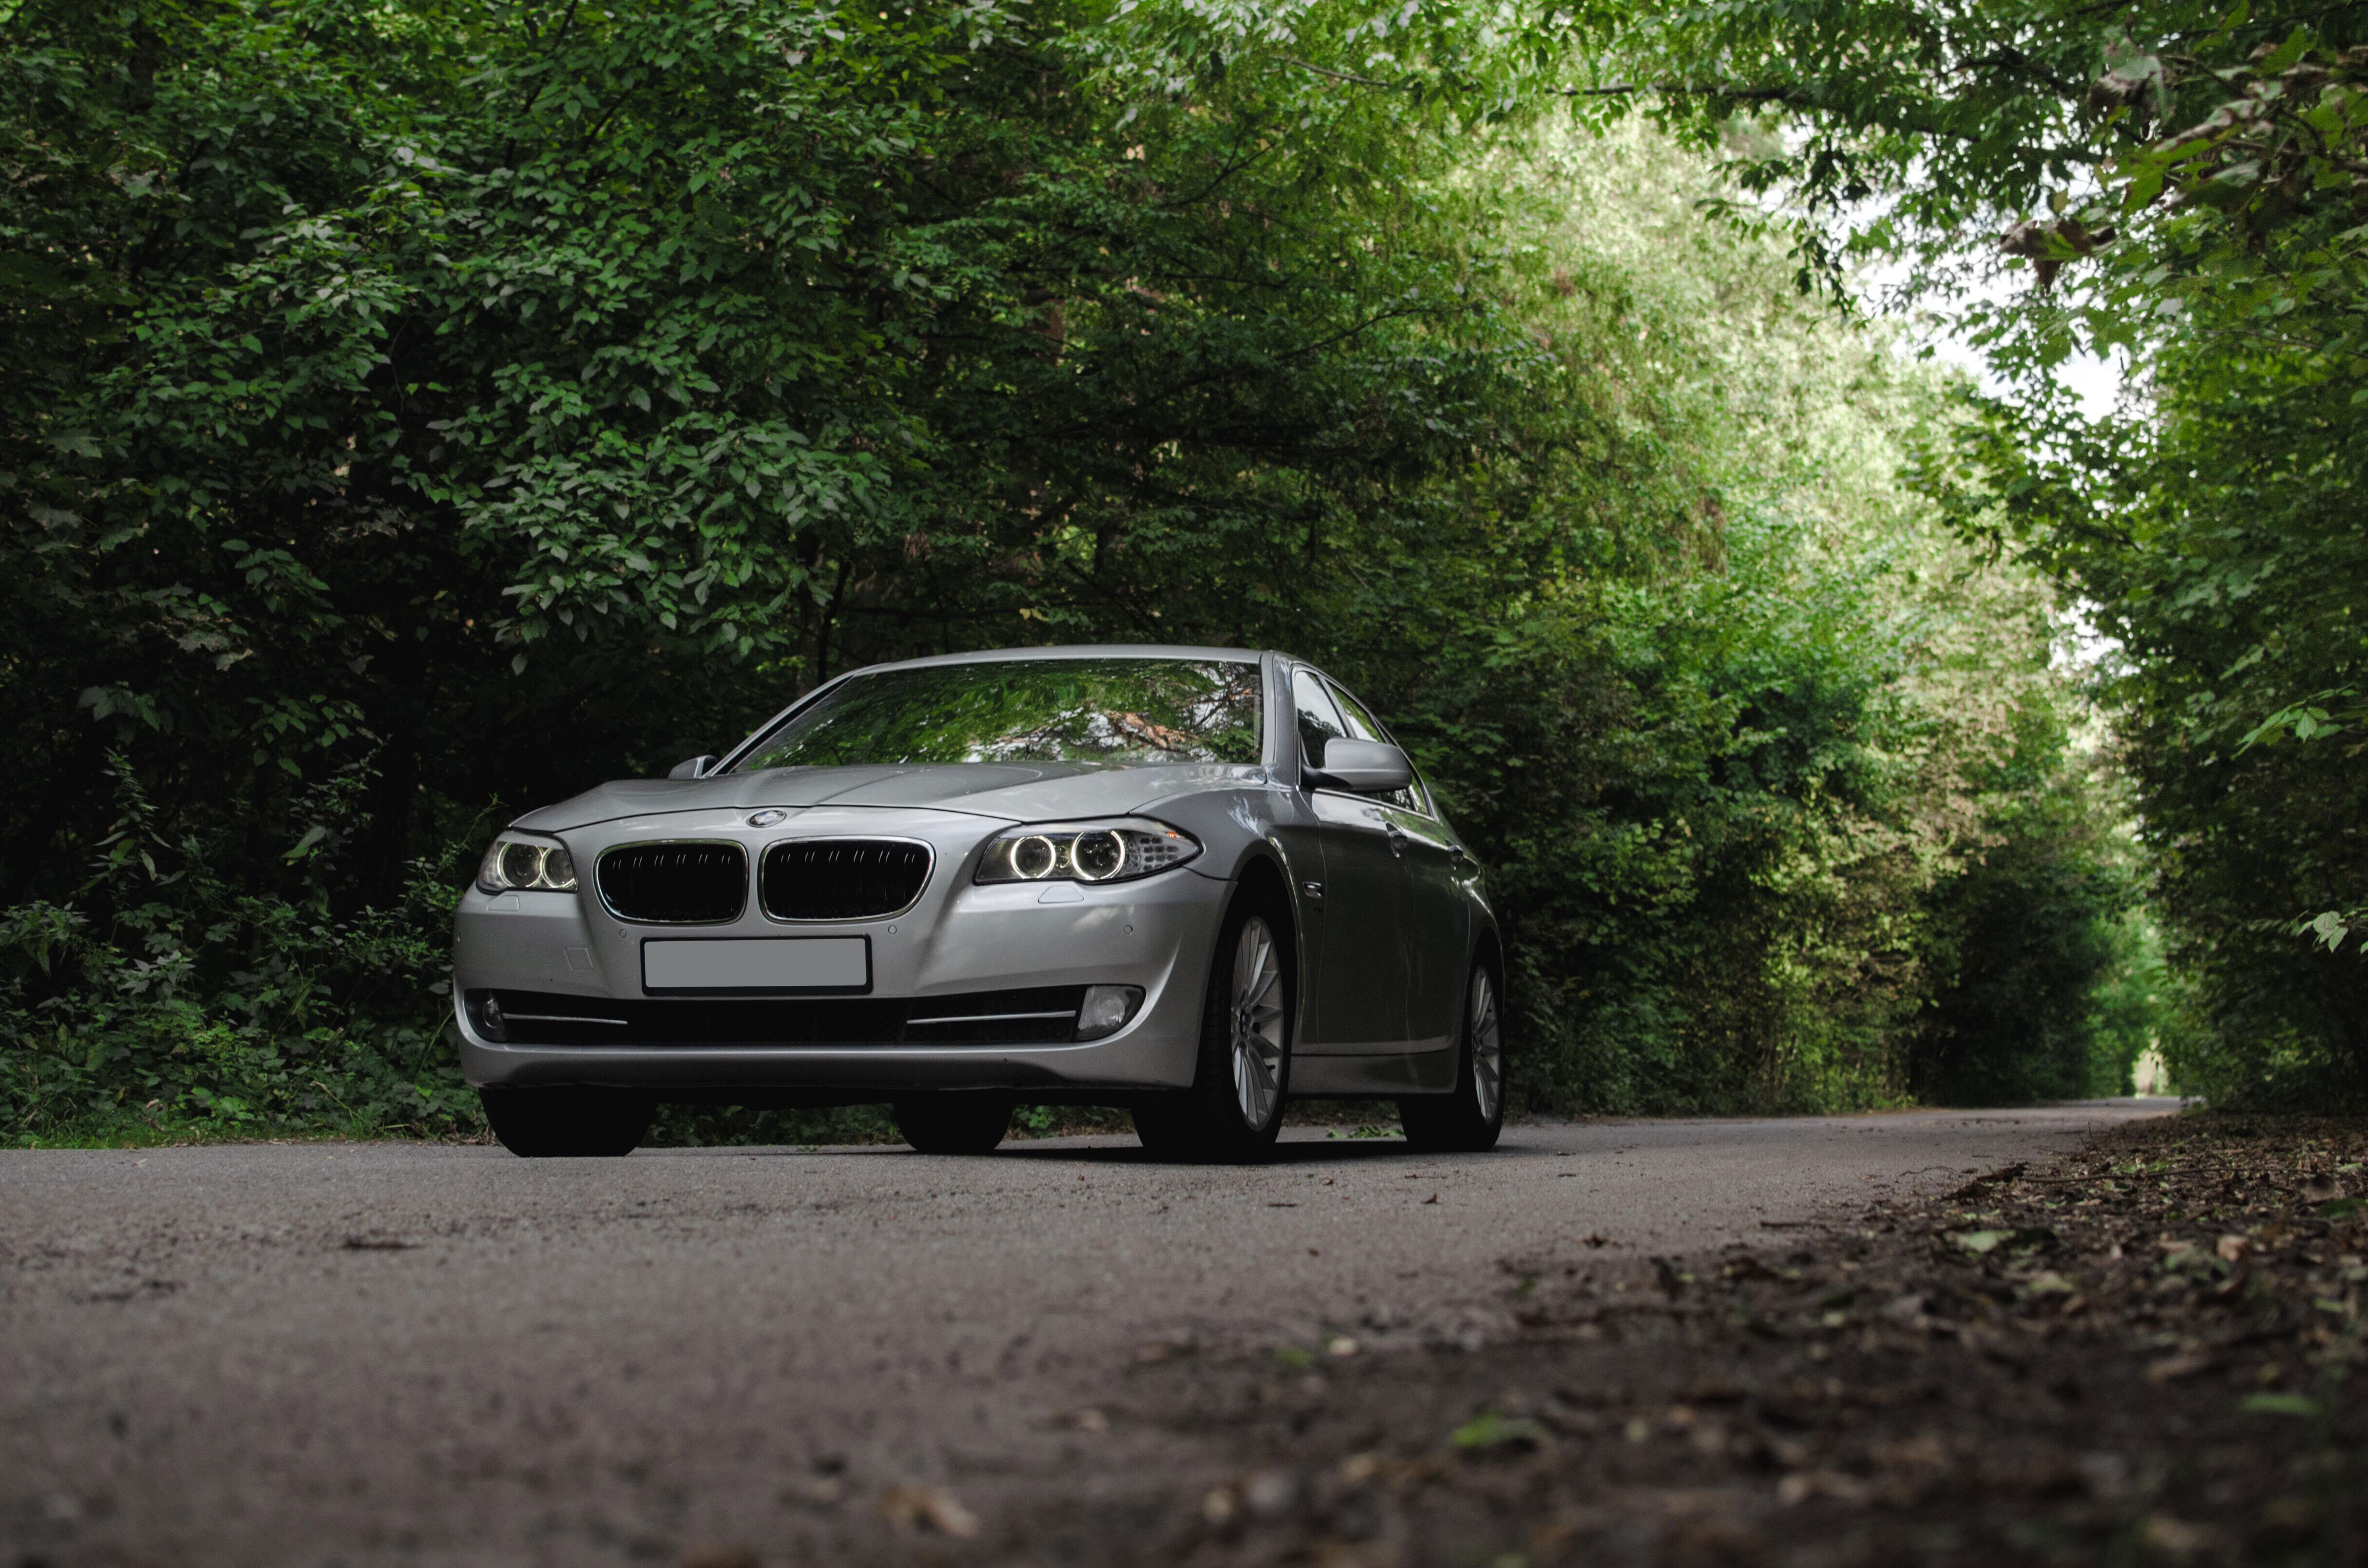 BMW 5シリーズの6代目にあたるF10。新しいデザインを取り入れつつも、BMWのDNAをしっかりと受け継いでい...